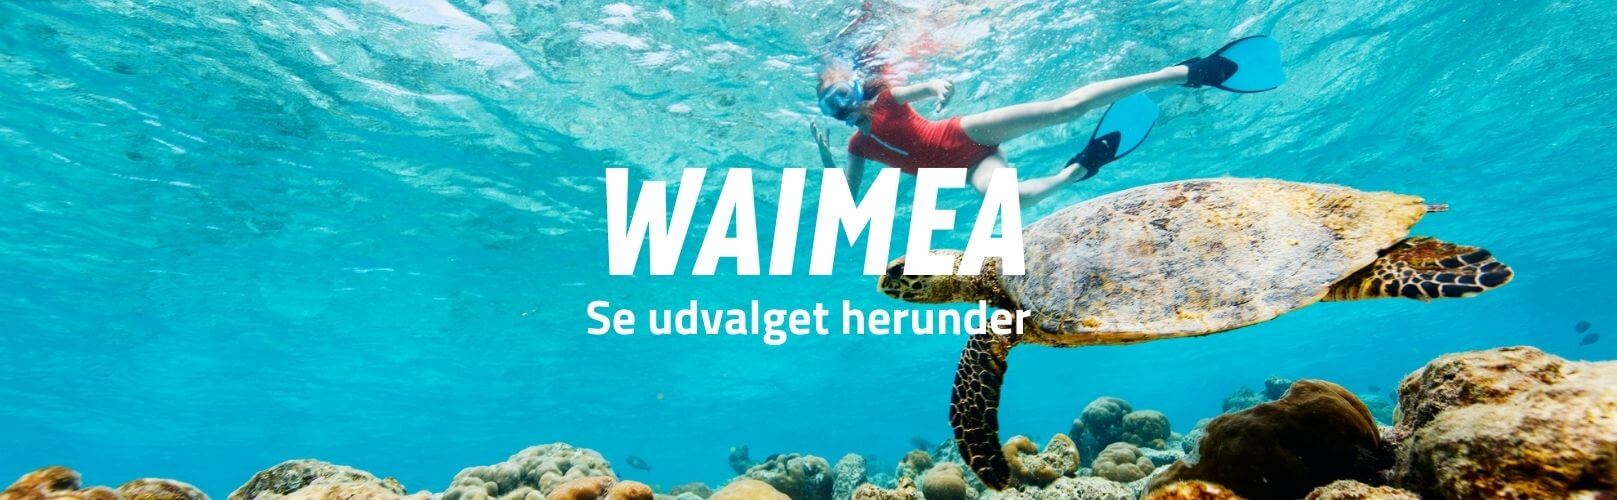 Waimea brand banner